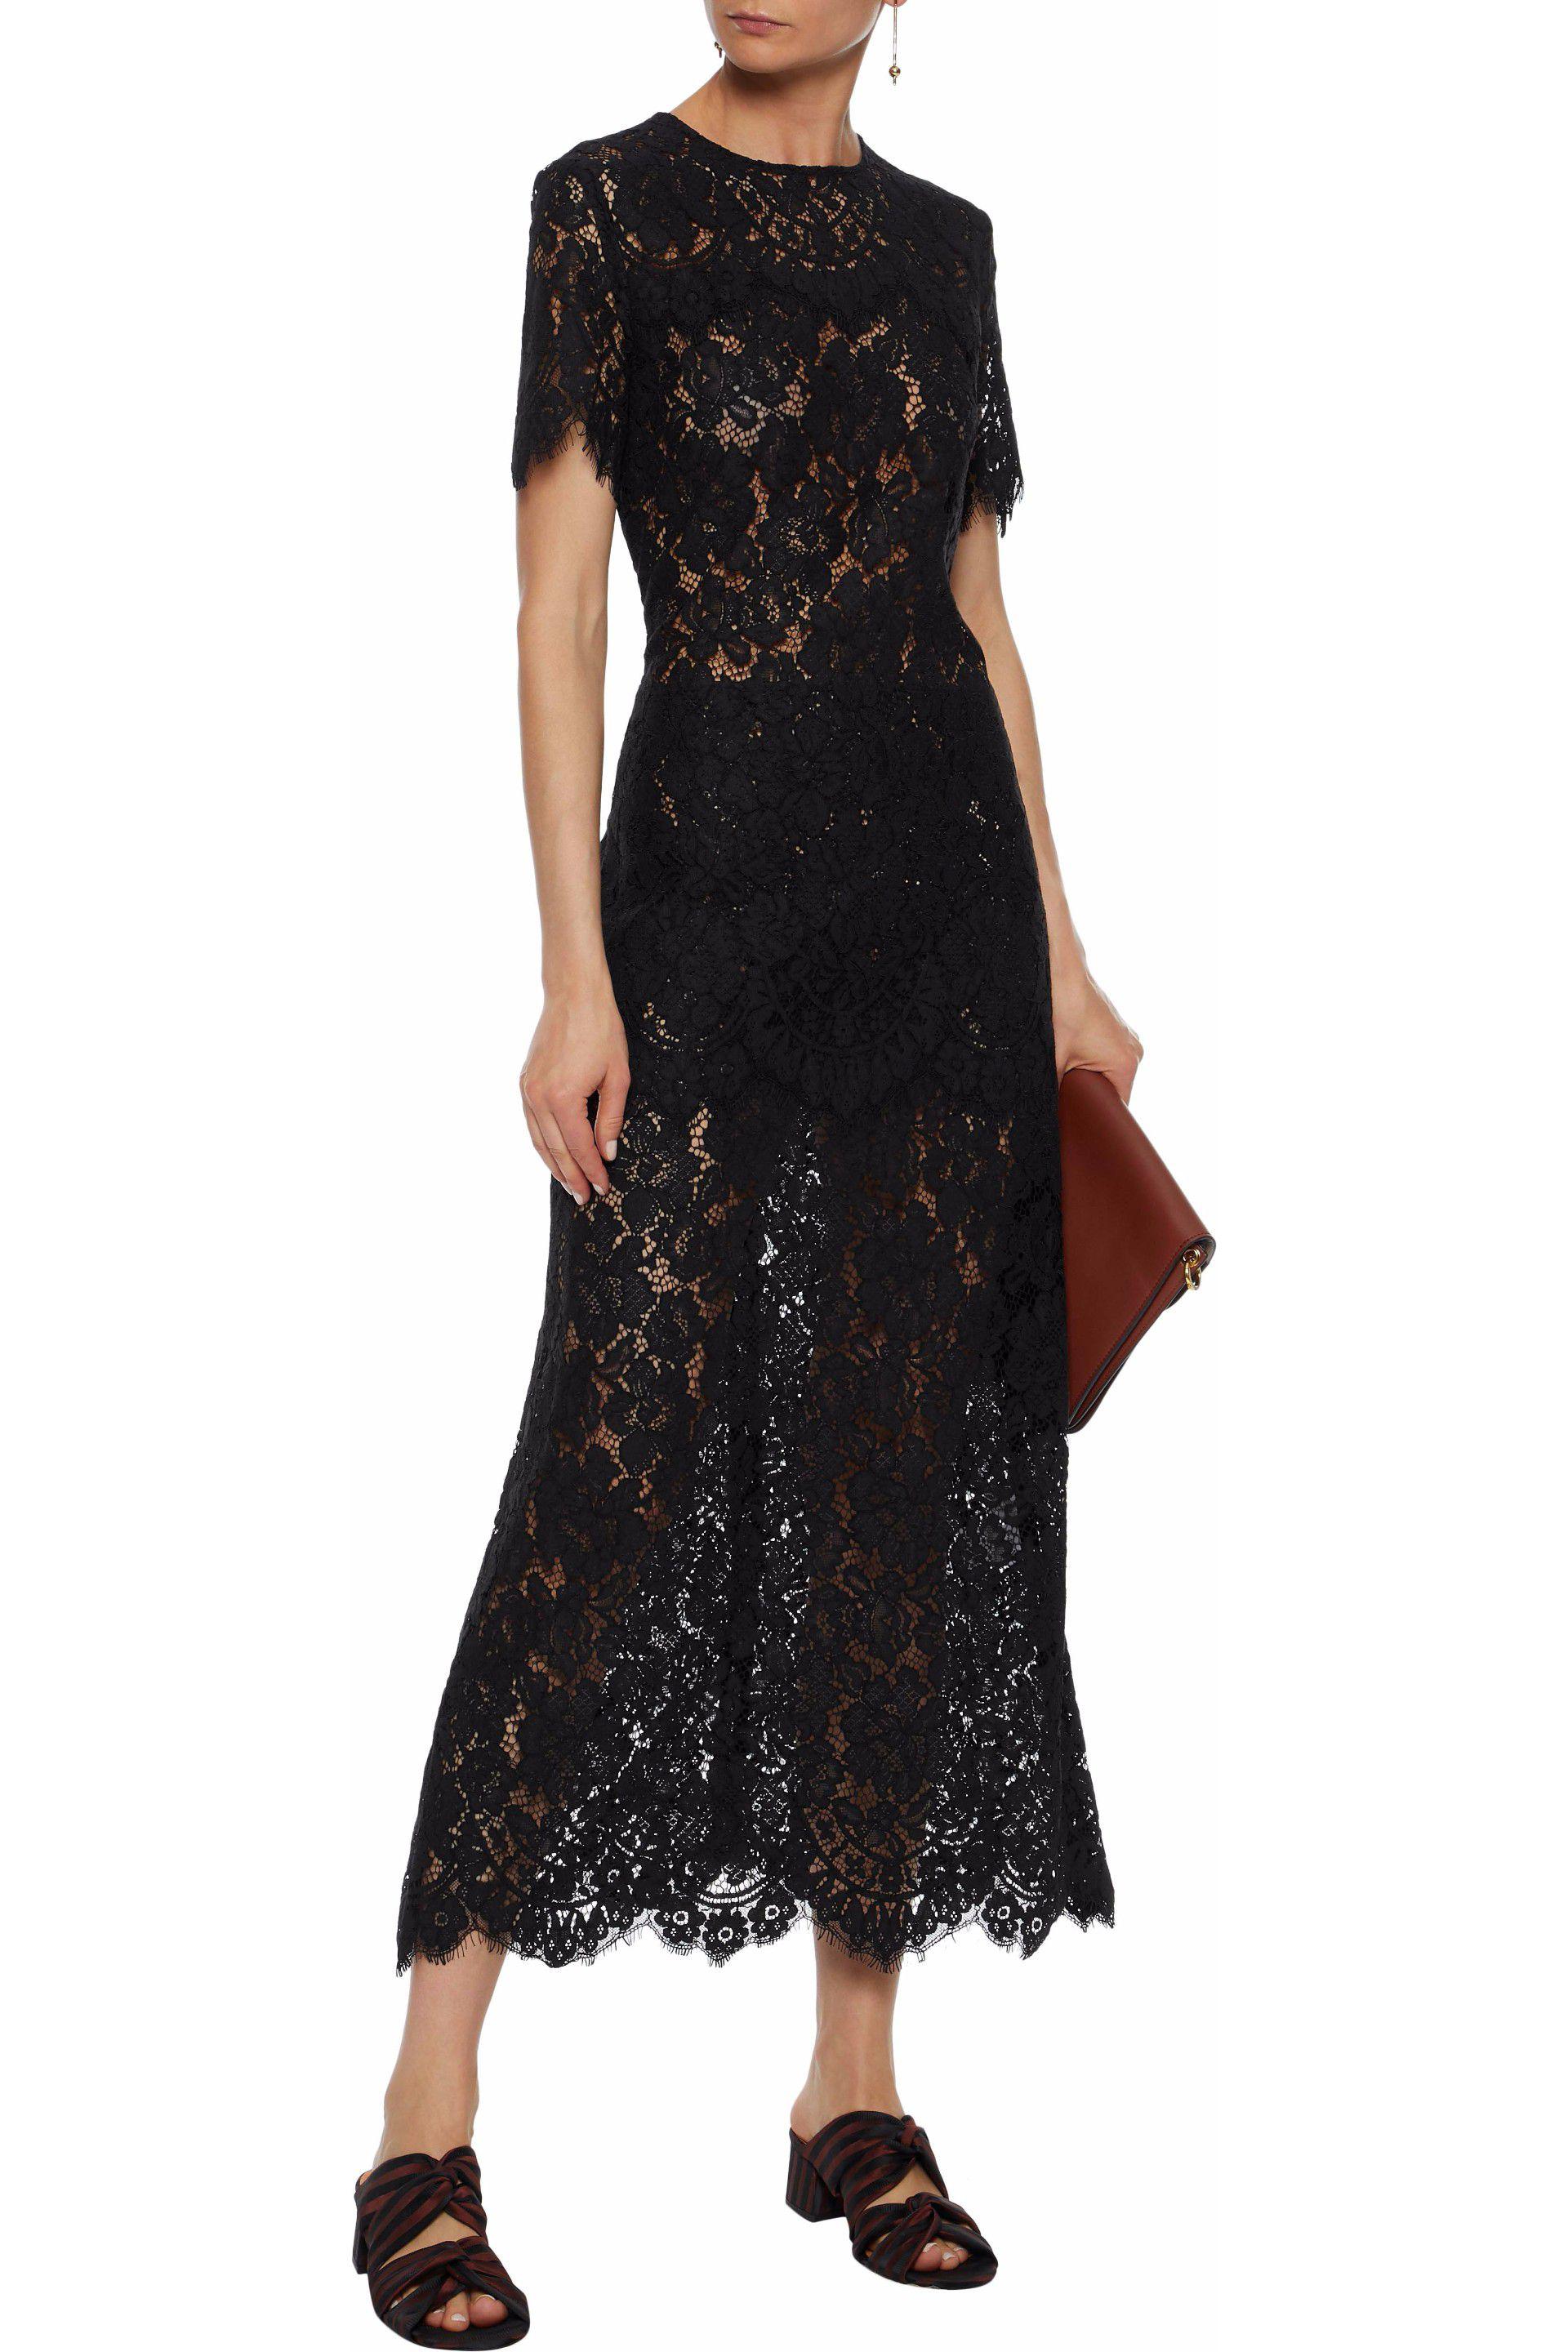 ganni duval lace jurk low cost 94006 61e3f